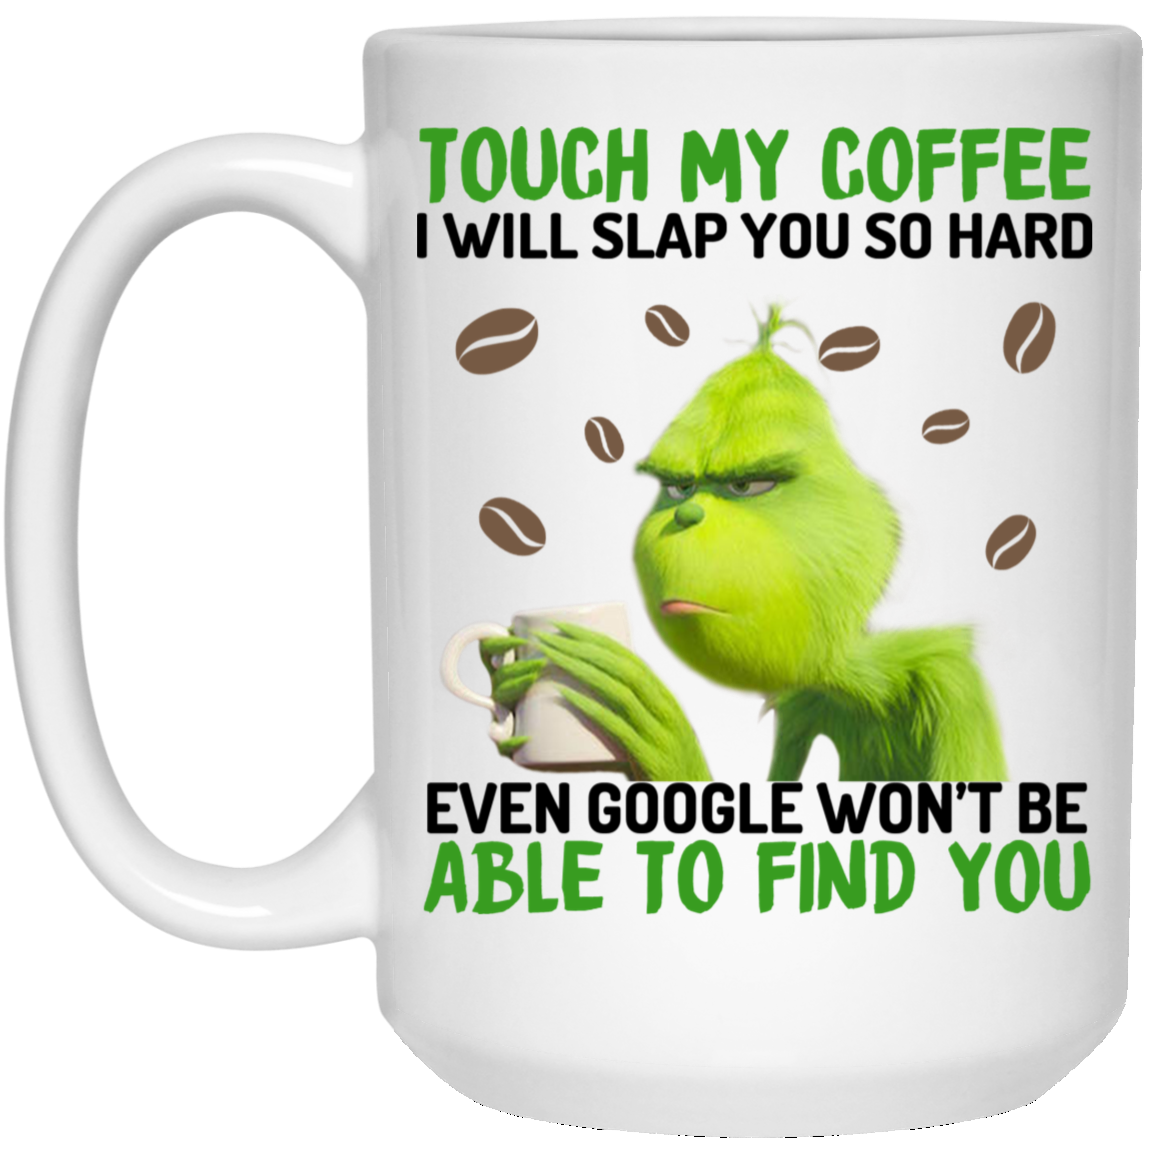 The Grinch Coffee Mug Camping Mug Travel Mug All Over Printed